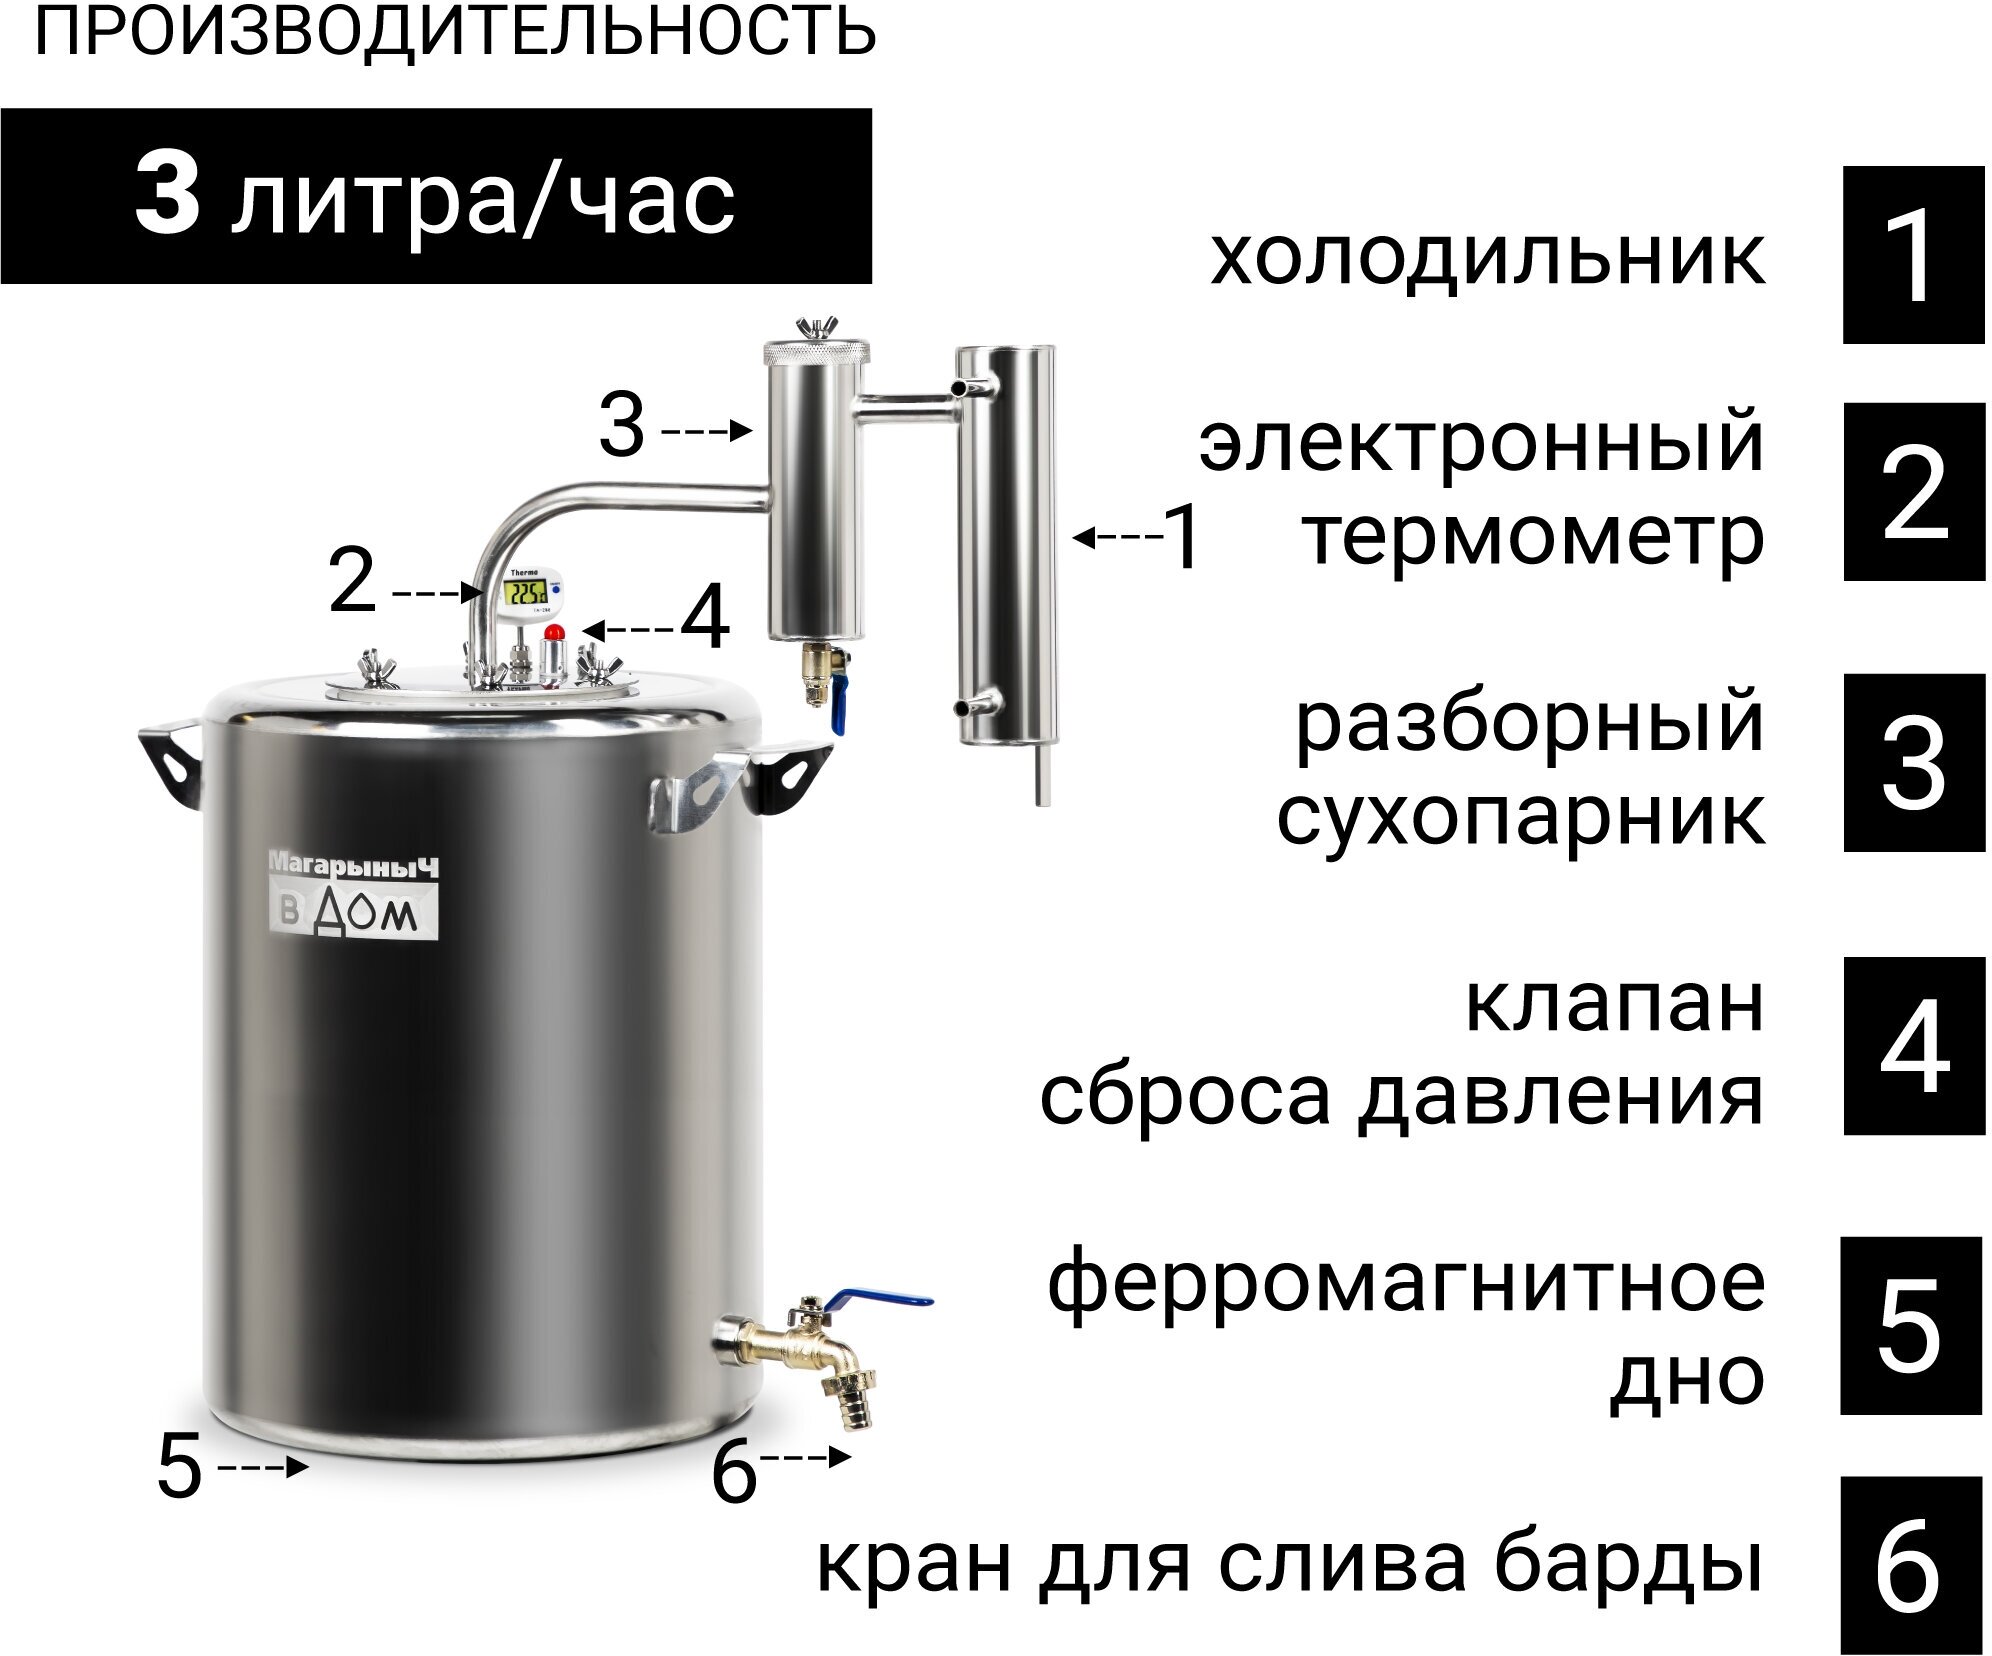 Самогонный аппарат "Будённый" 30 литров, дистиллятор с сухопарником